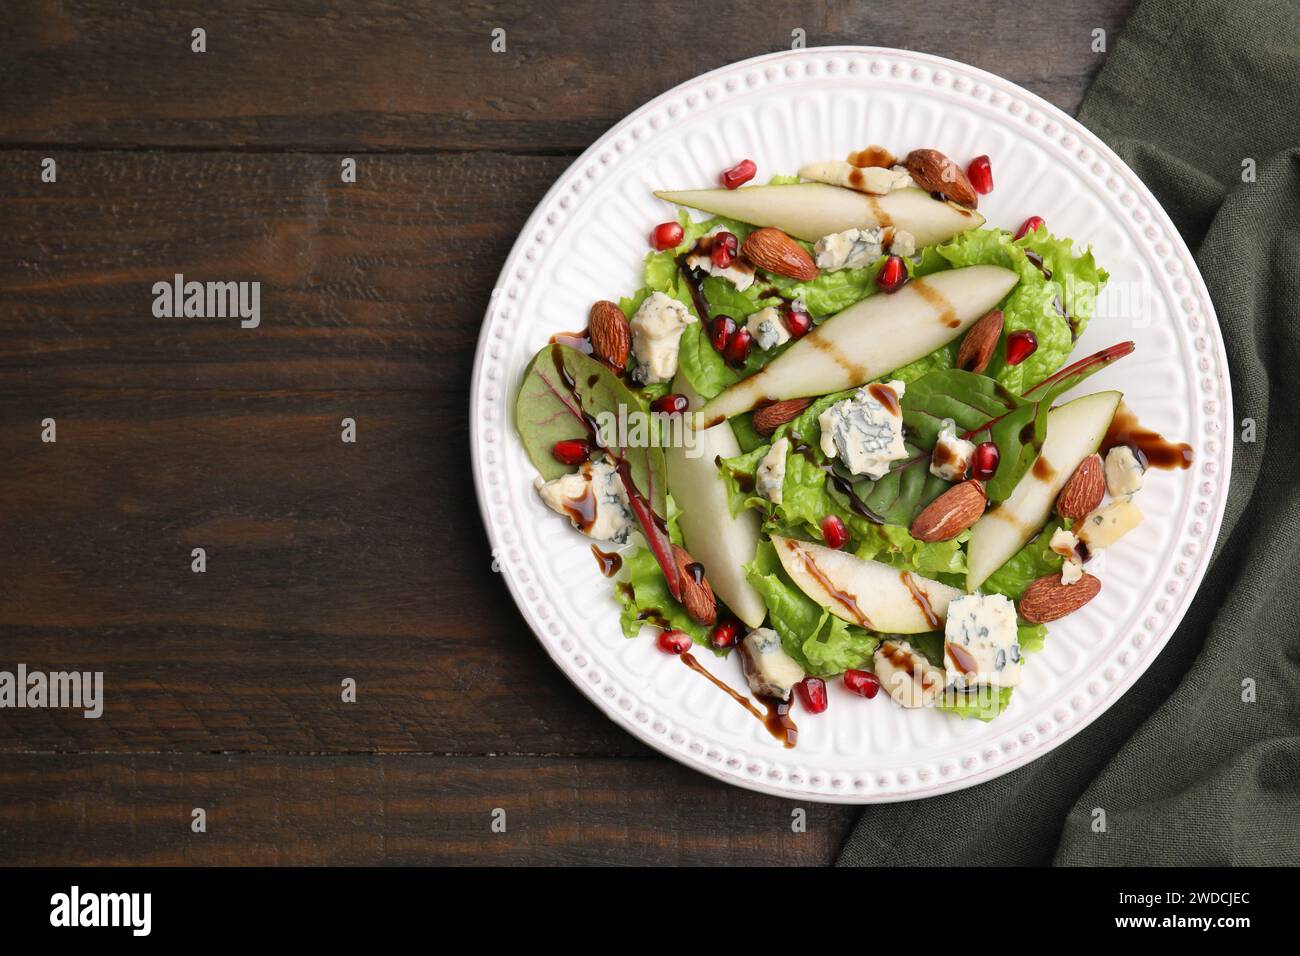 Délicieuse salade de poires avec sauce sur table en bois, vue de dessus. Espace pour le texte Banque D'Images